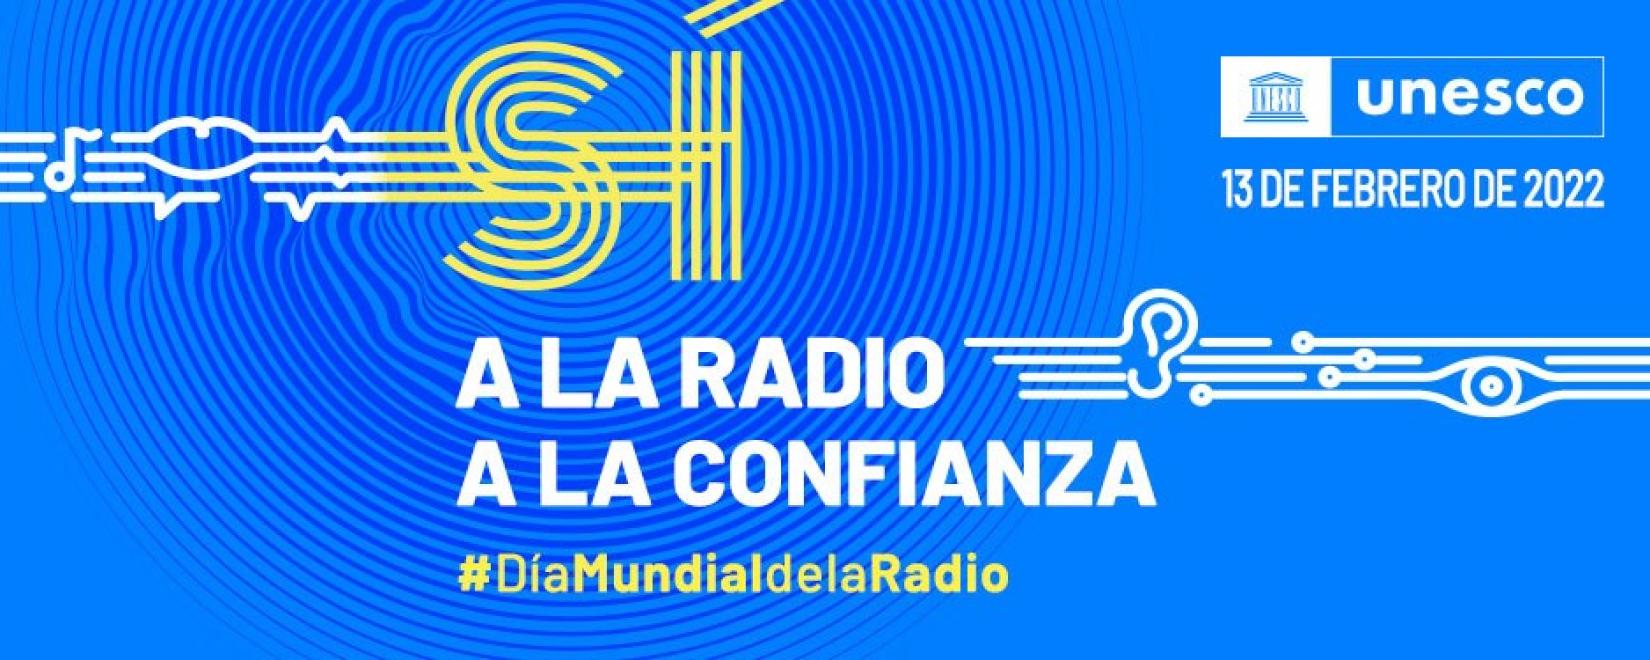 Dia Mundial de la Radio